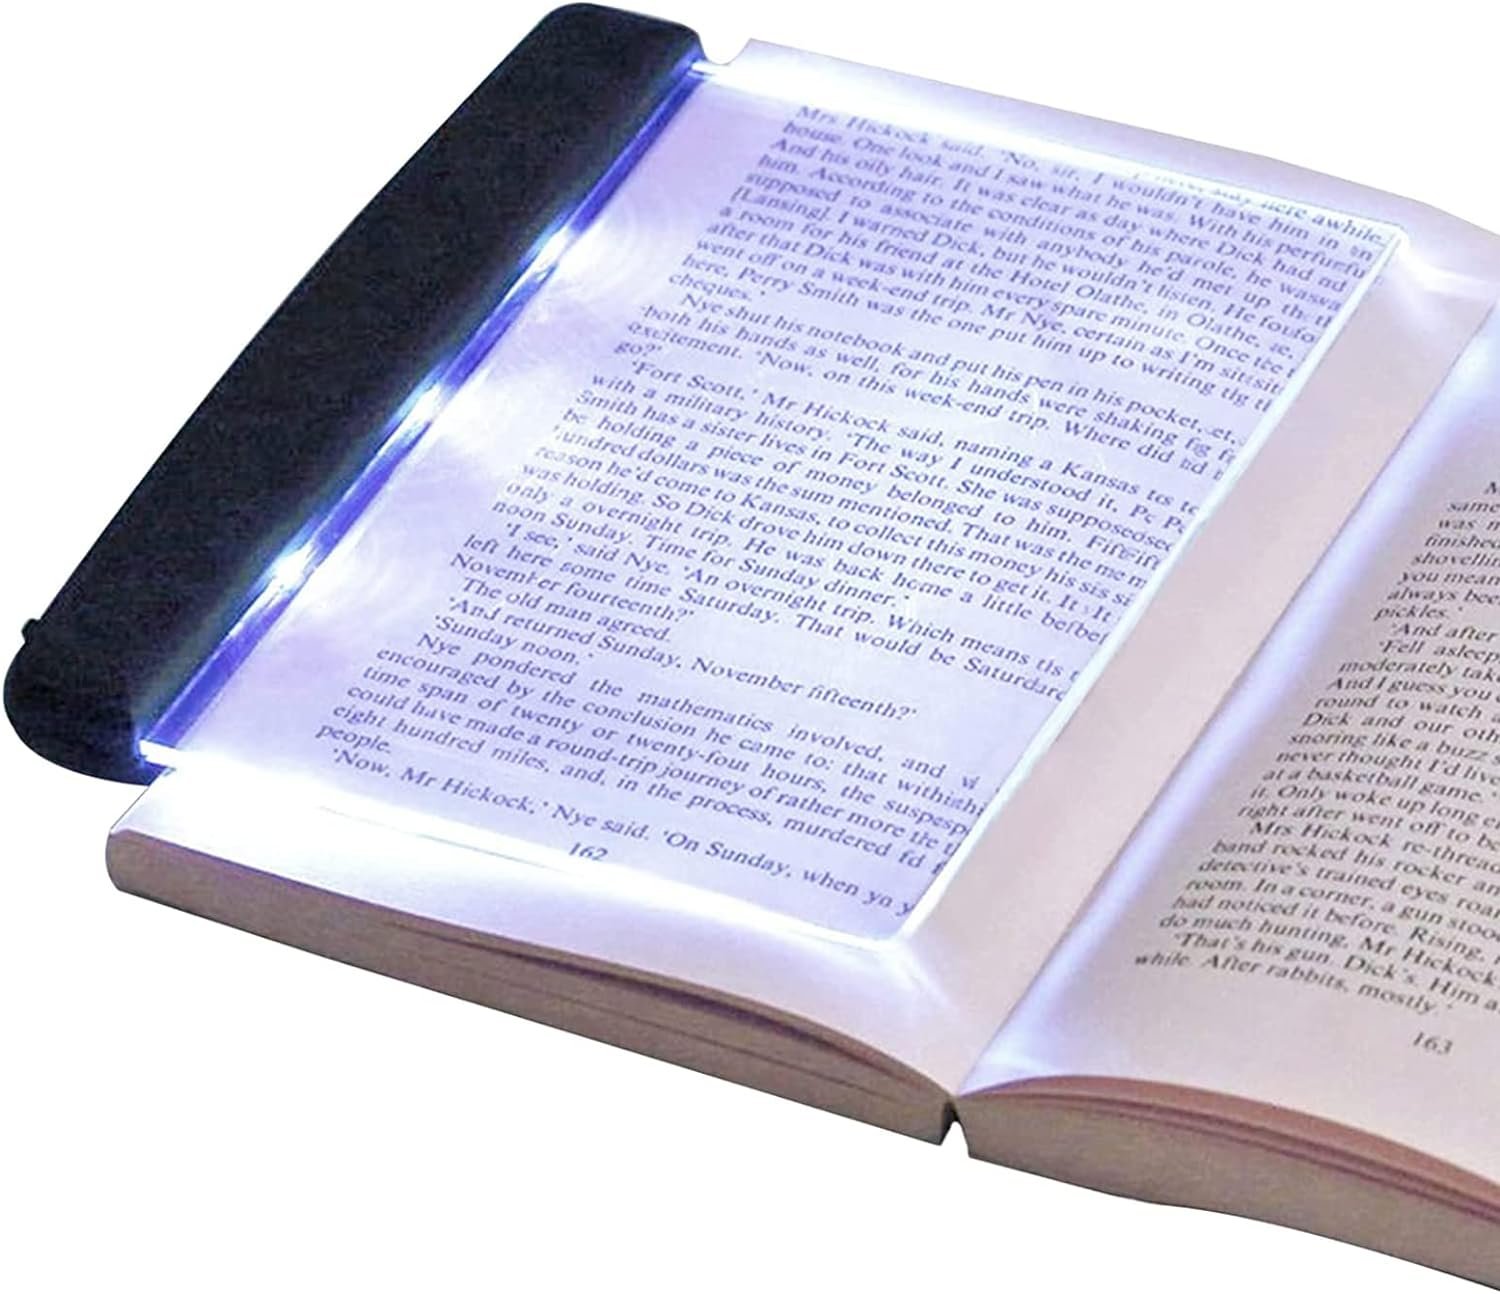 LED Reading Light